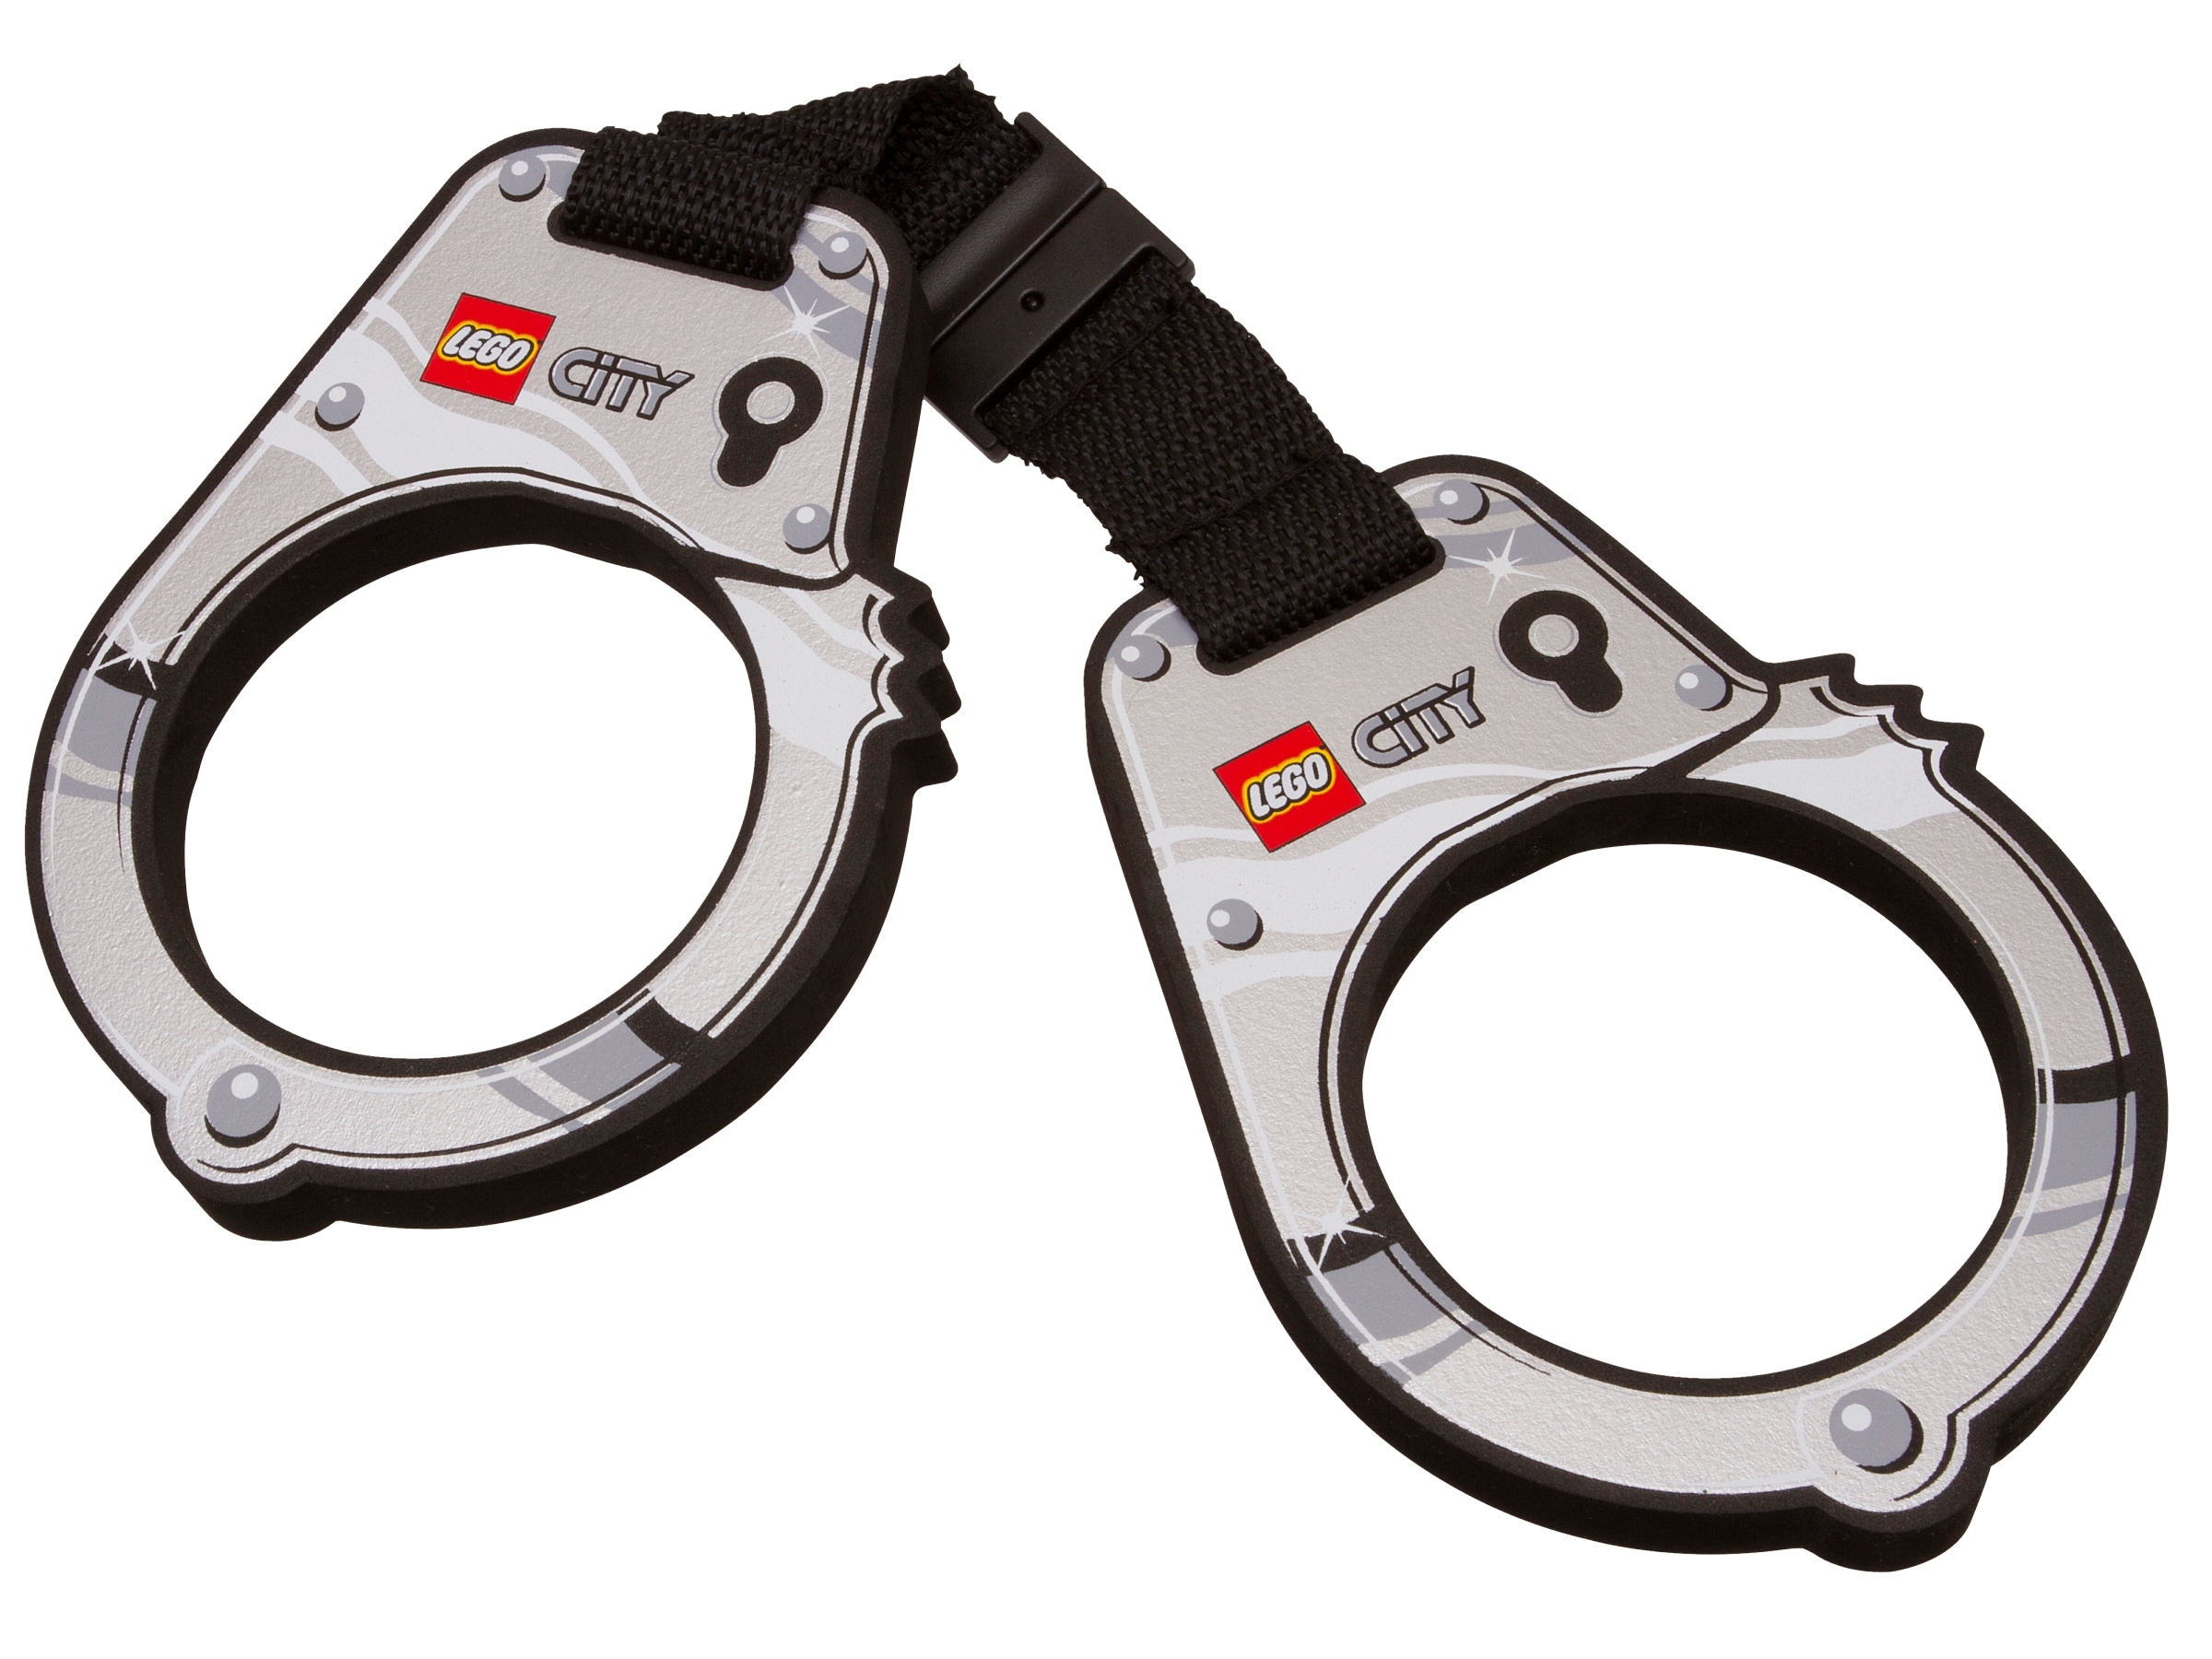 Lego ® Accessoire Minifig Lot x5 Menottes Prisonnier Police Handcuffs 97927 NEW 